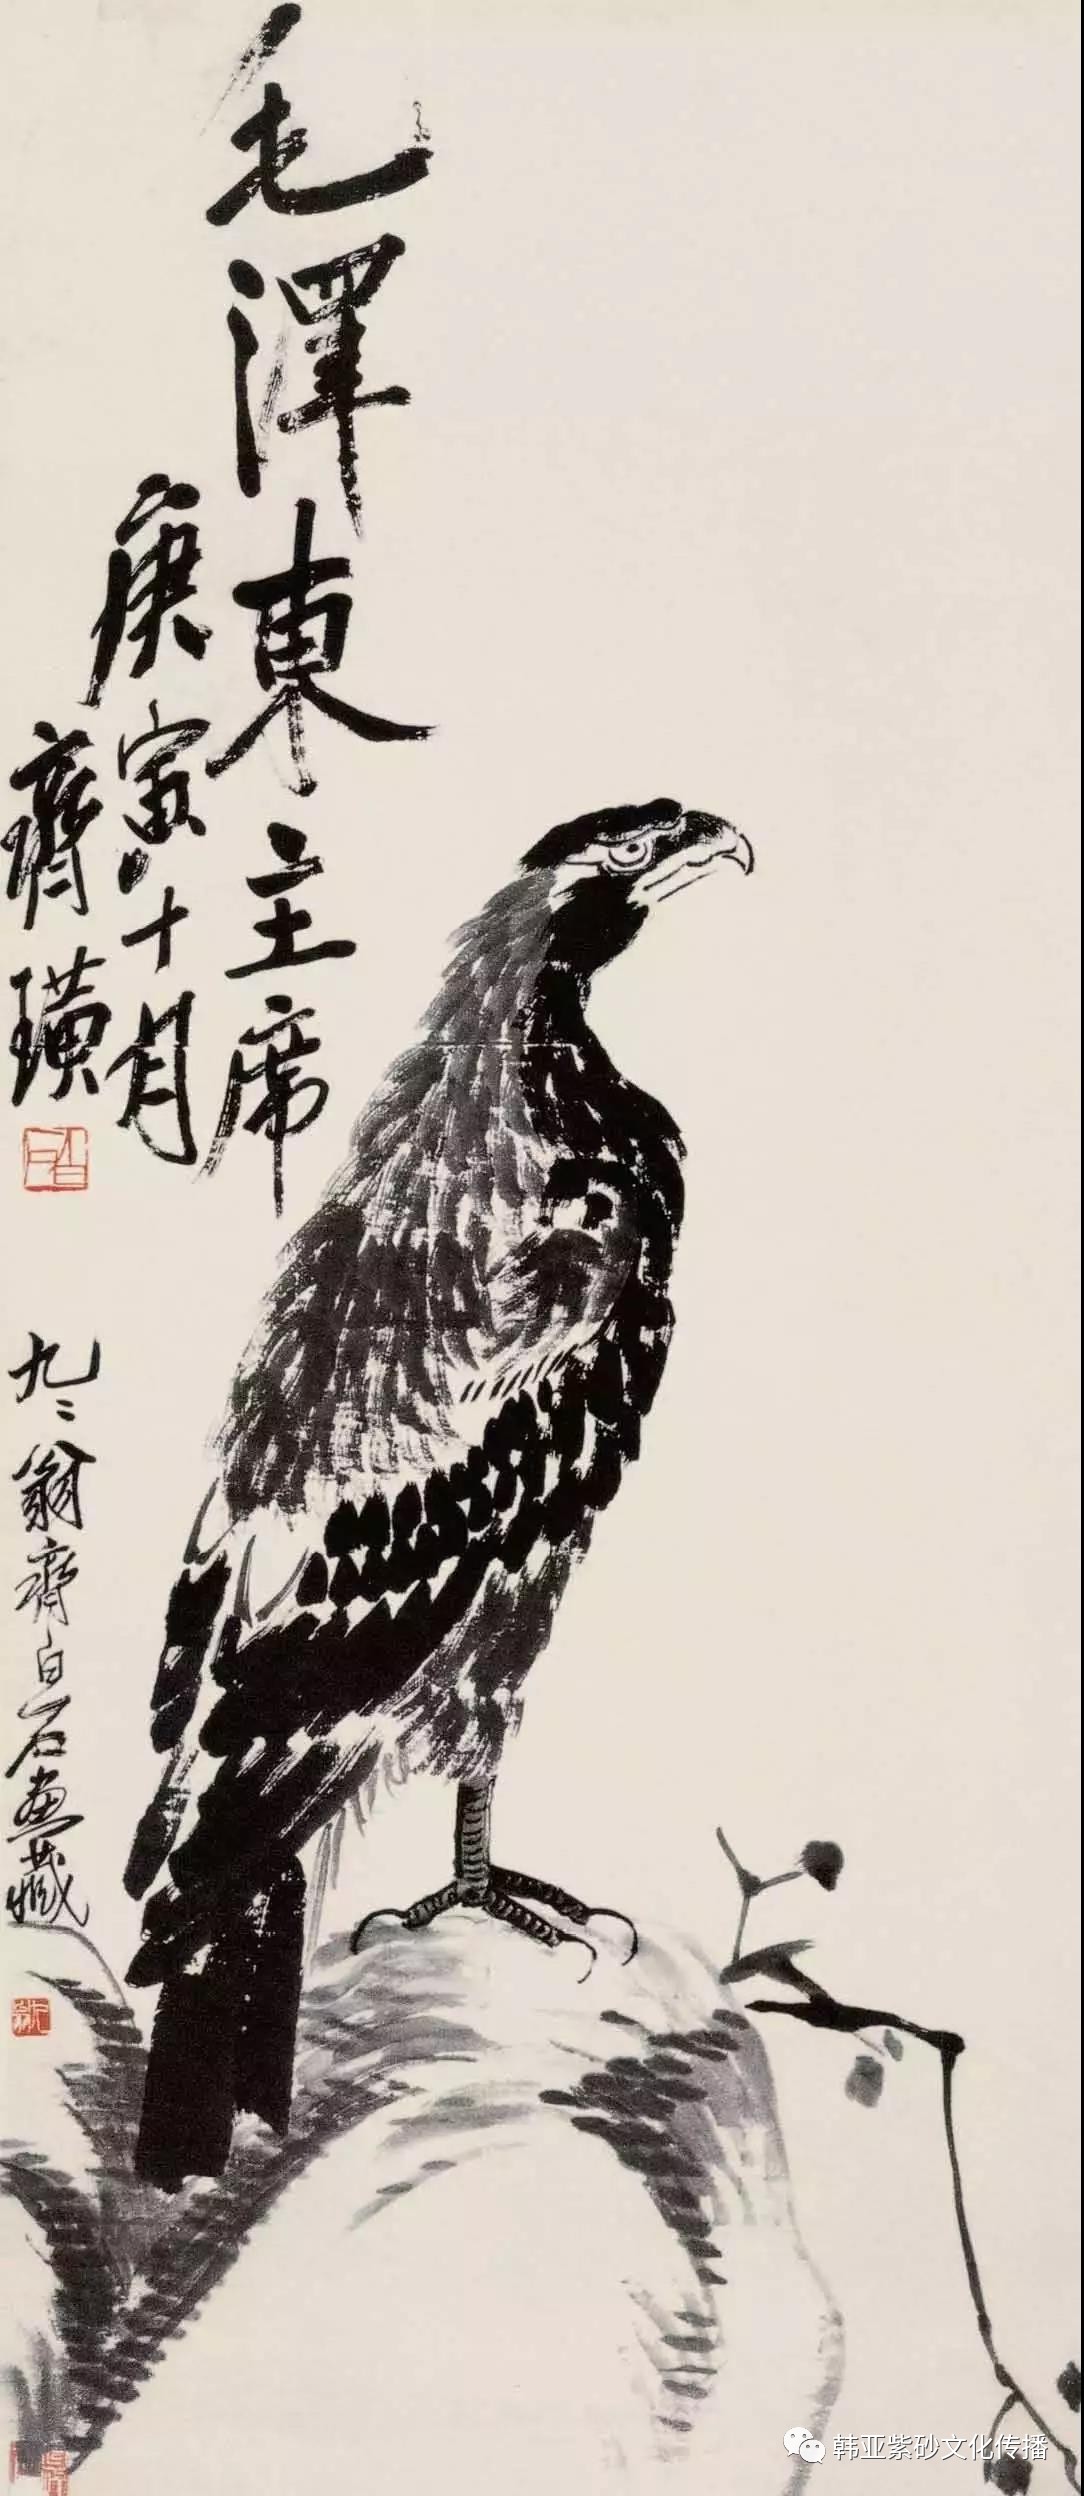 到了1932 年,齐白石画鹰发生了变化,这与他观得陈半丁所藏八大山人